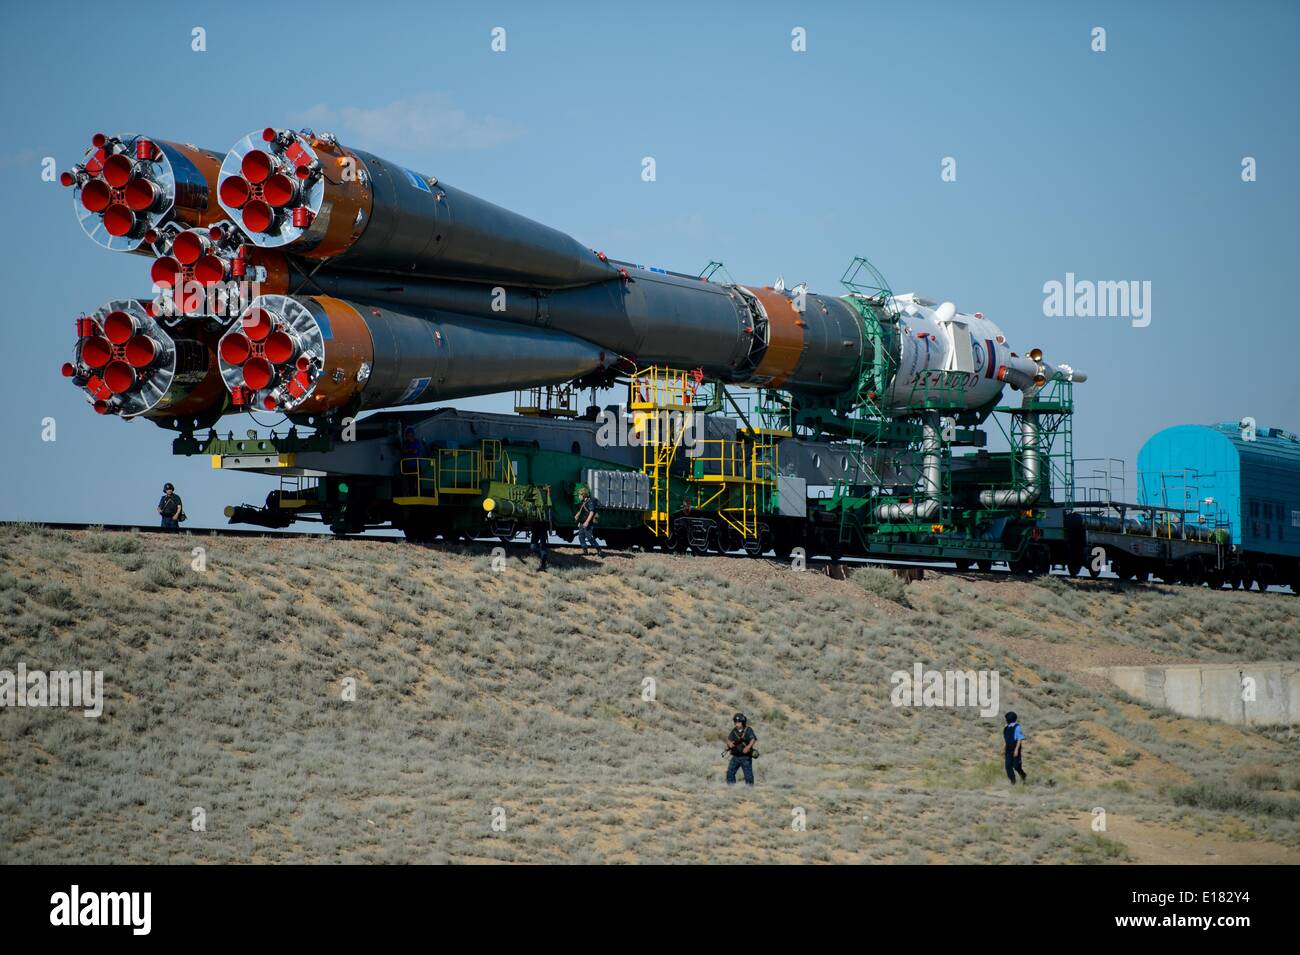 Le Soyouz TMA-13M Roskosmos est déployé dans l'aire de lancement par le train en préparation du lancement de la Station spatiale internationale, le 26 mai 2014 au cosmodrome de Baïkonour au Kazakhstan. Banque D'Images